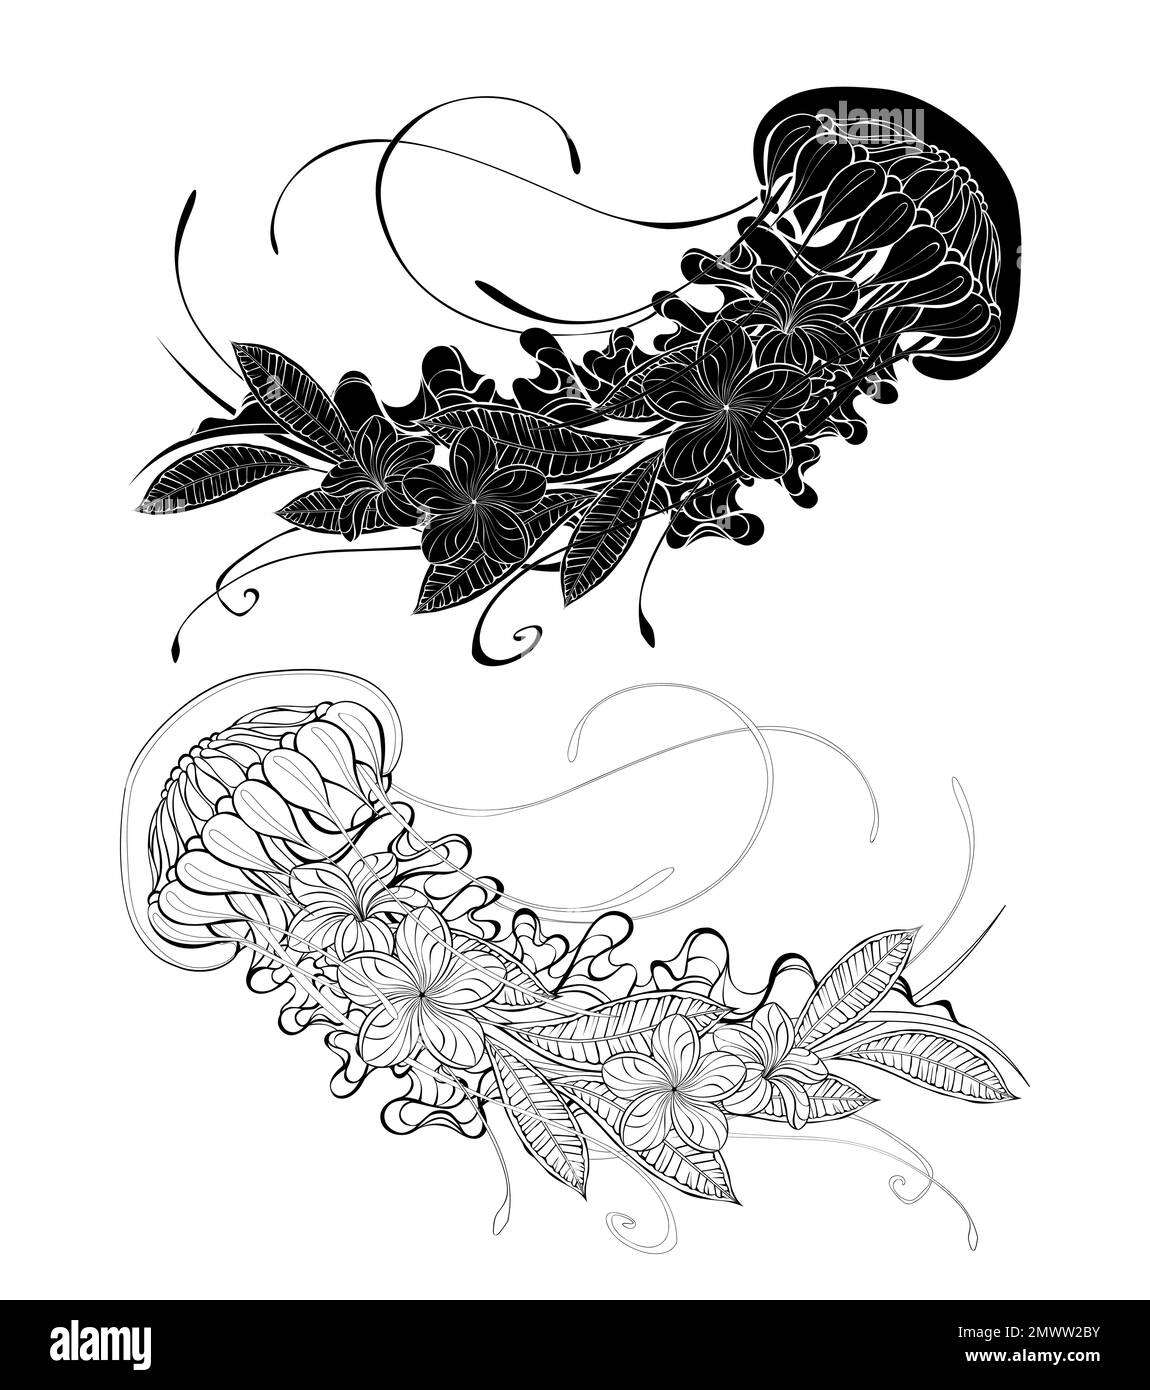 Contorno, silhouette, esotica, artisticamente disegnata medusa con plumeria fiorente e piante ornamentali su sfondo bianco. Colorazione. Illustrazione Vettoriale